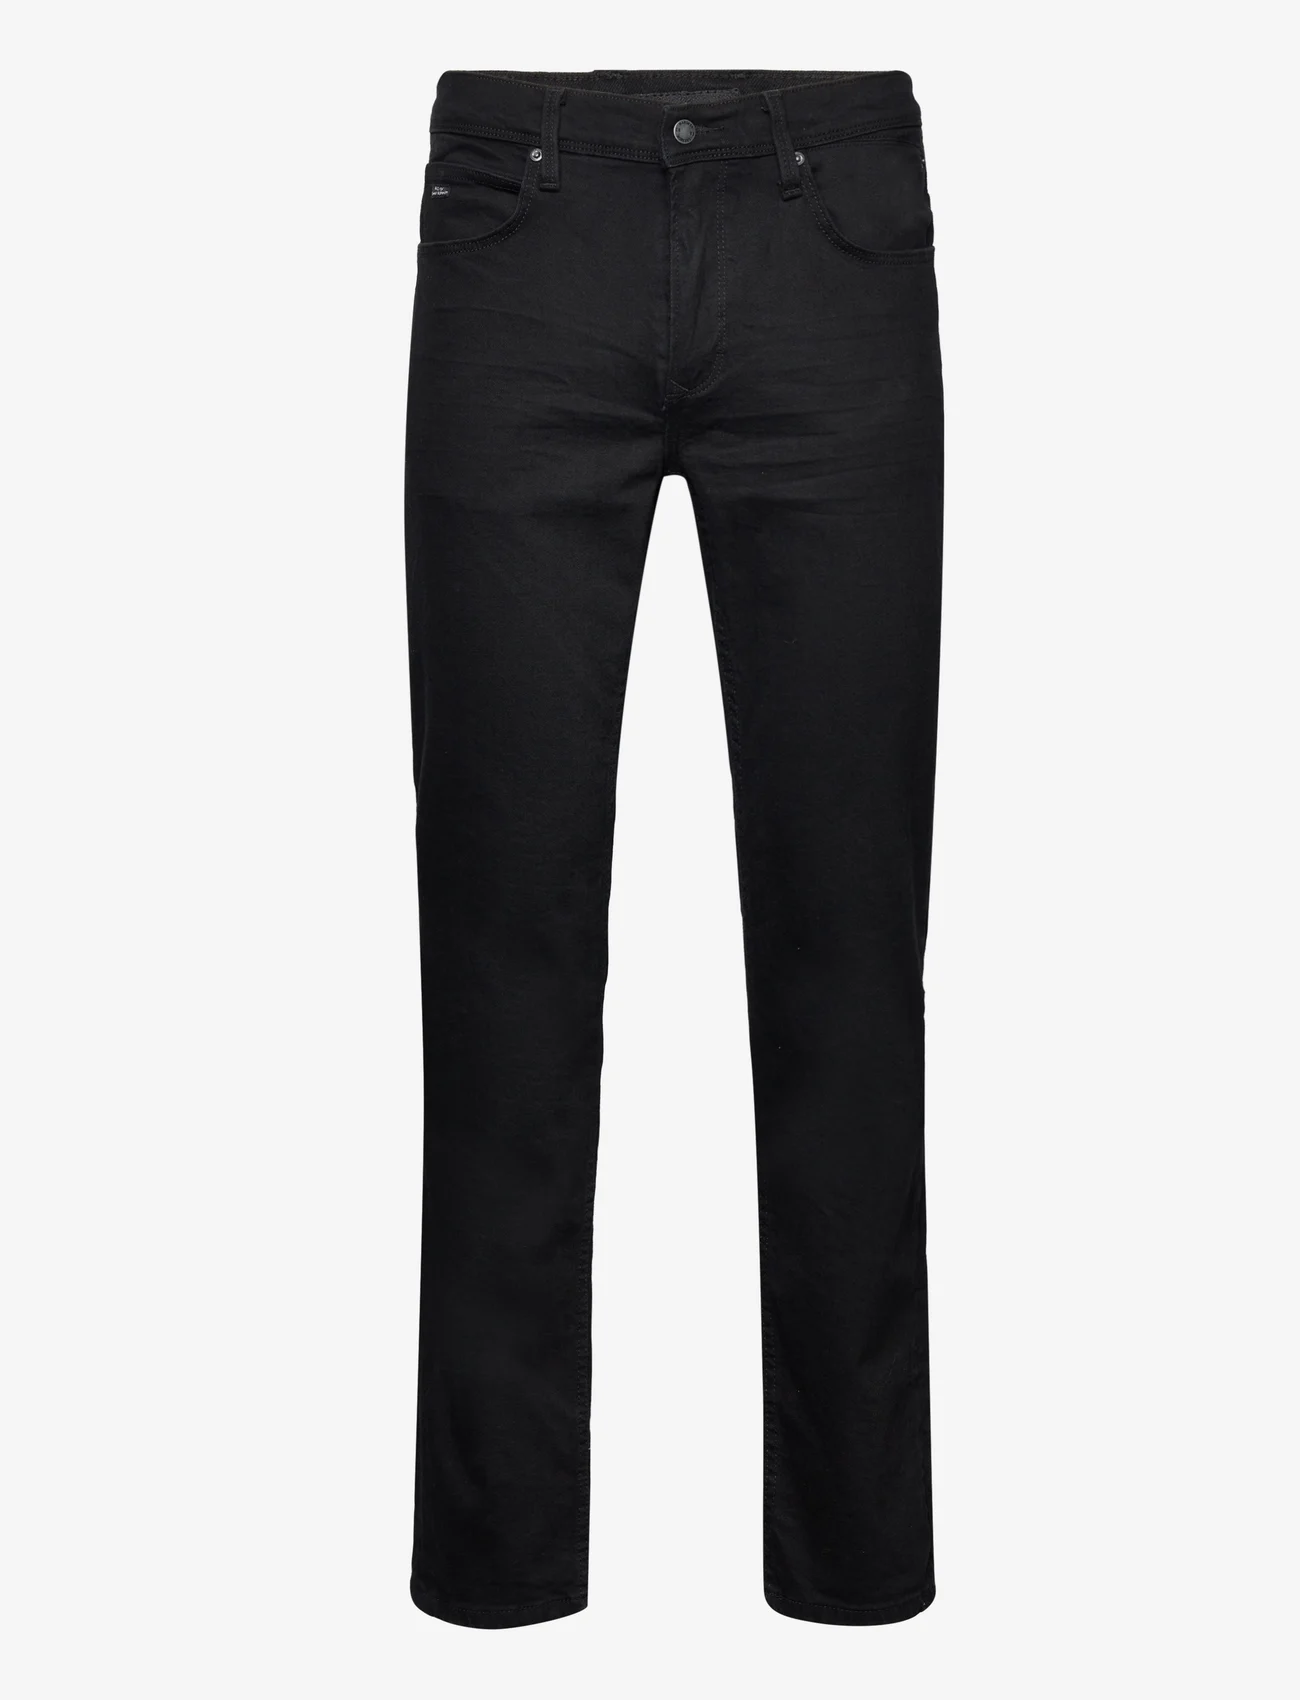 Blend - Rock fit - regular jeans - black - 0